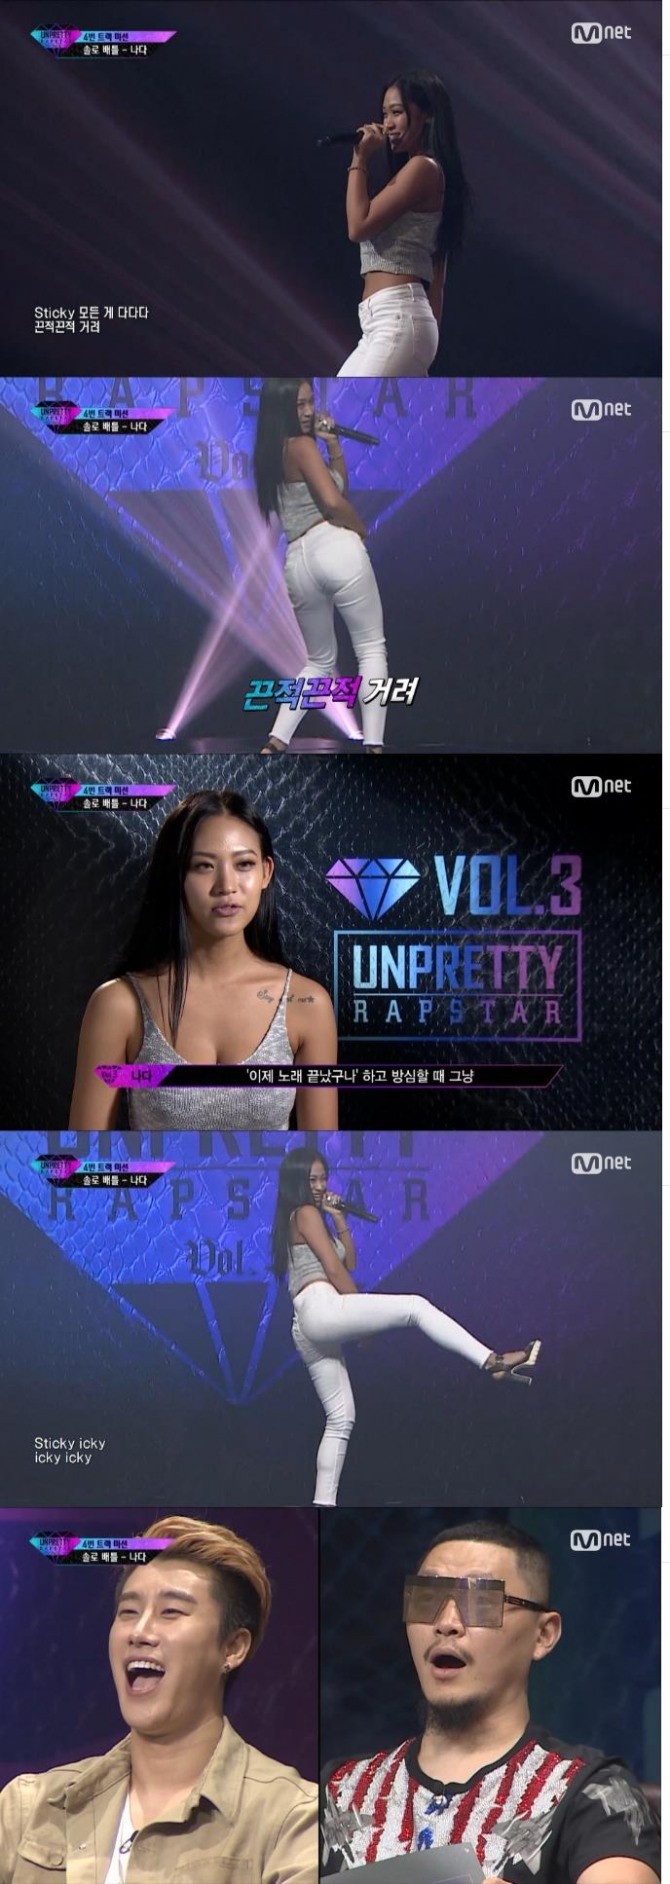 26일 밤 방송된 Mnet '언프리티랩스타3'에서는 래퍼 나다가 프로듀서 산이의 4번 트랙 '스티키(Sticky)'를 차지했다./사진=Mnet 방송 캡처